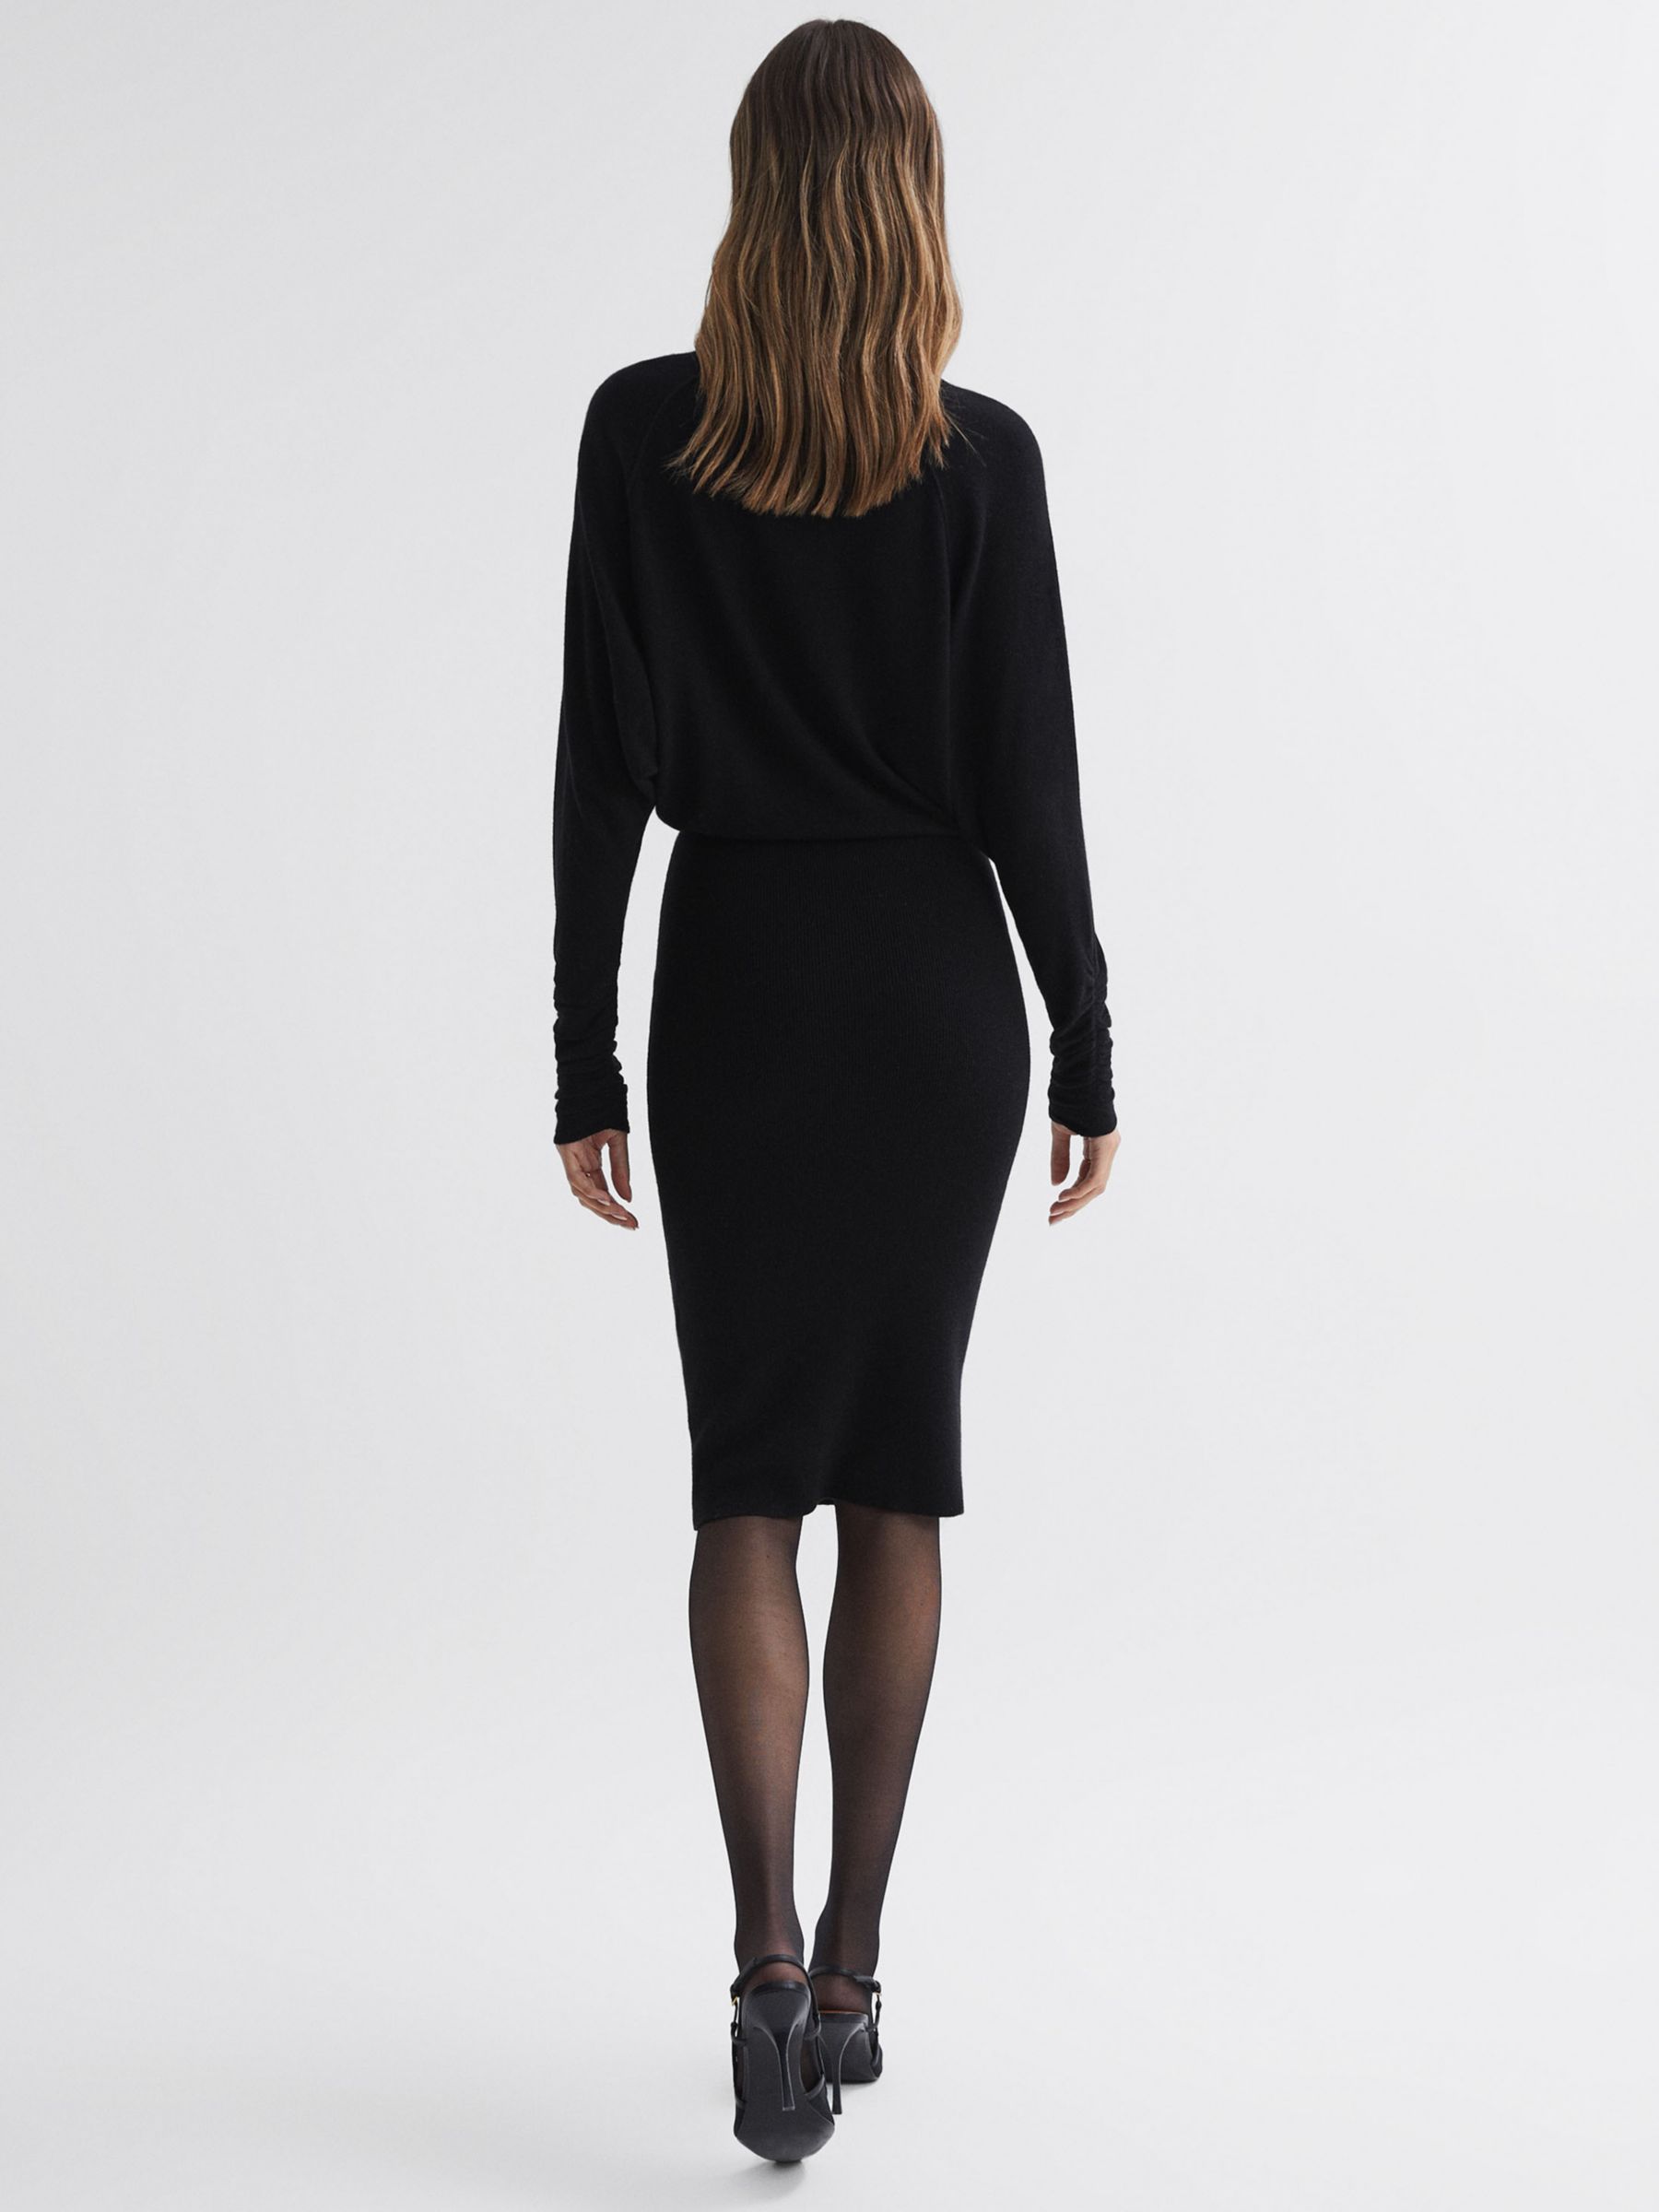 Reiss Freya Knitted High Neck Dress, Black, XS